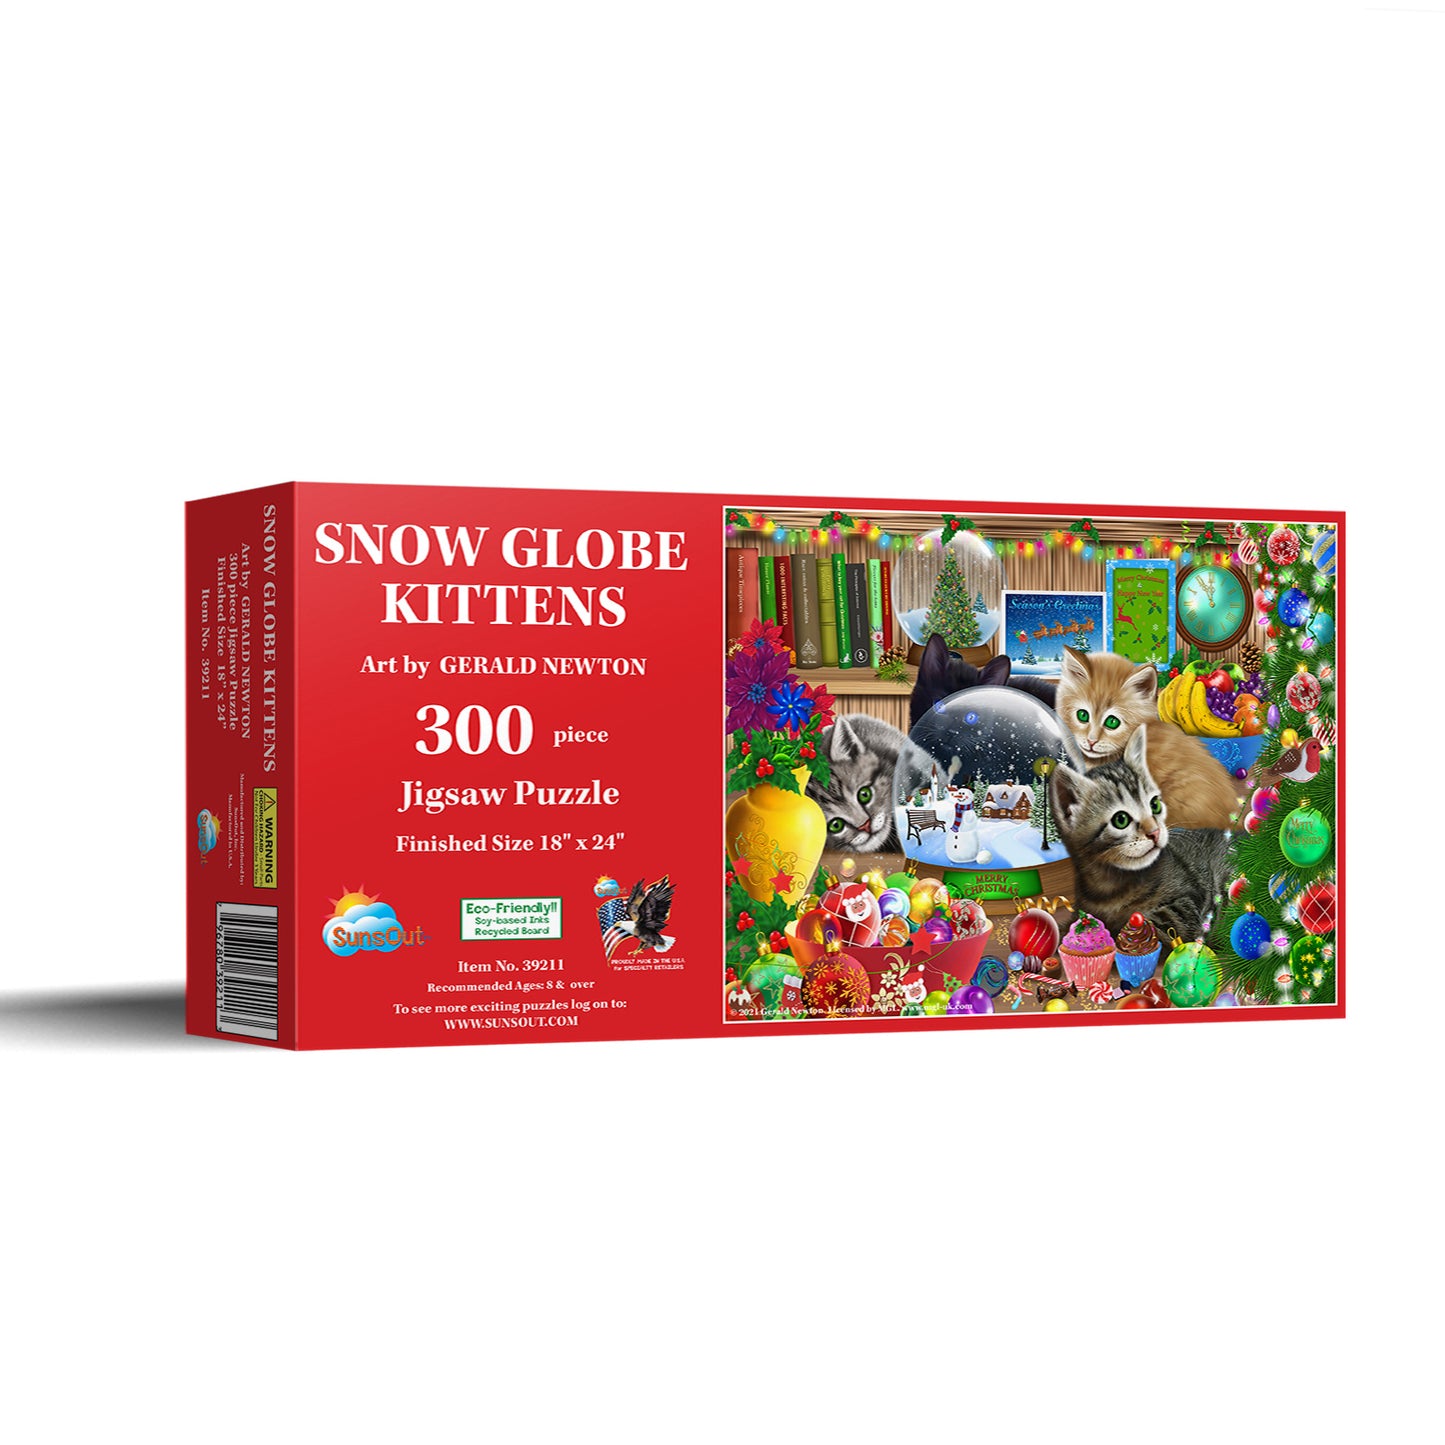 Snow globe Kittens - 300 Piece Jigsaw Puzzle